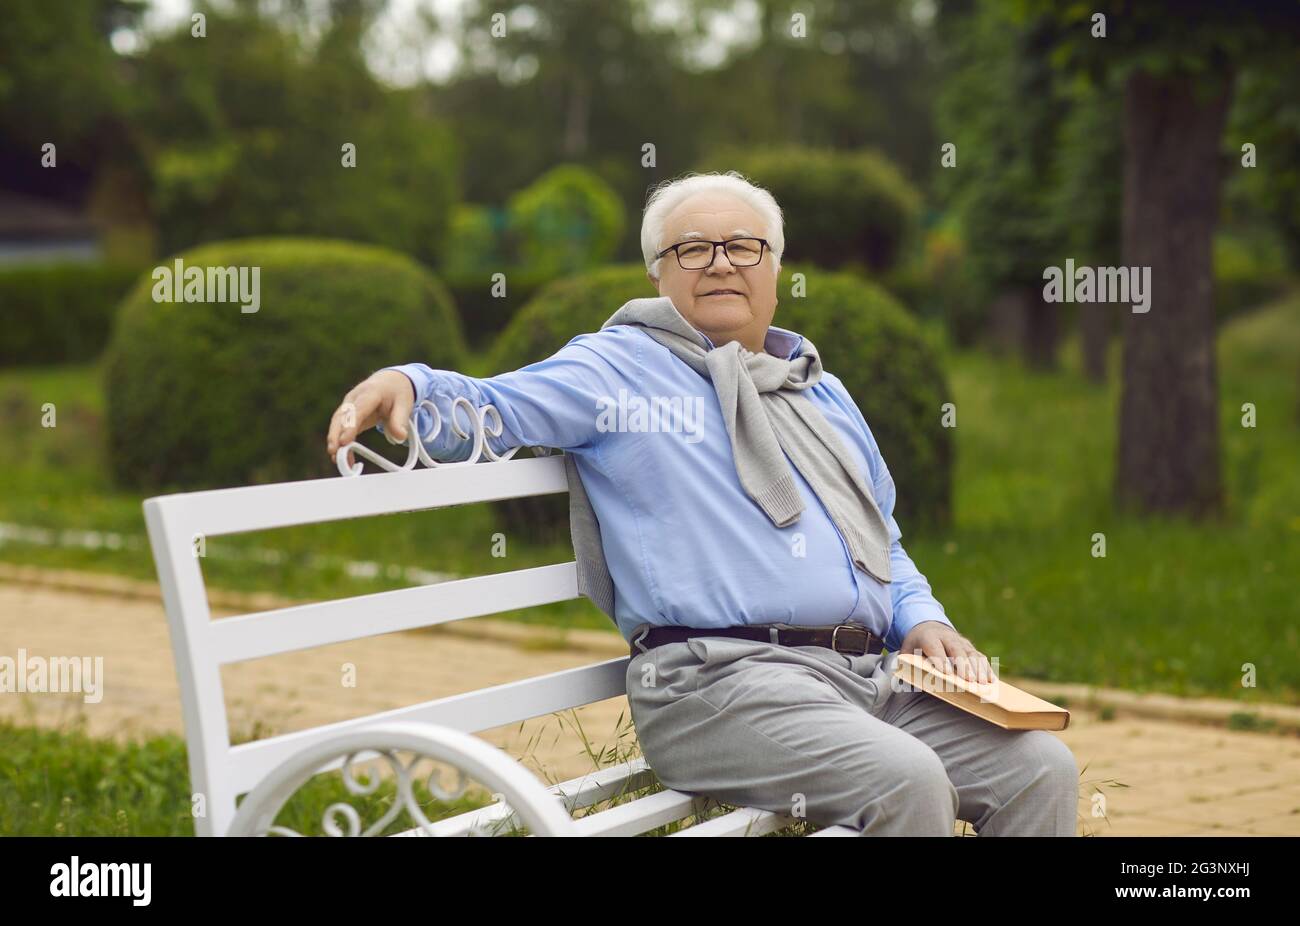 L'homme senior est assis sur un banc et lit un livre. Un homme âgé aux cheveux blancs repose sur un banc de parc Banque D'Images